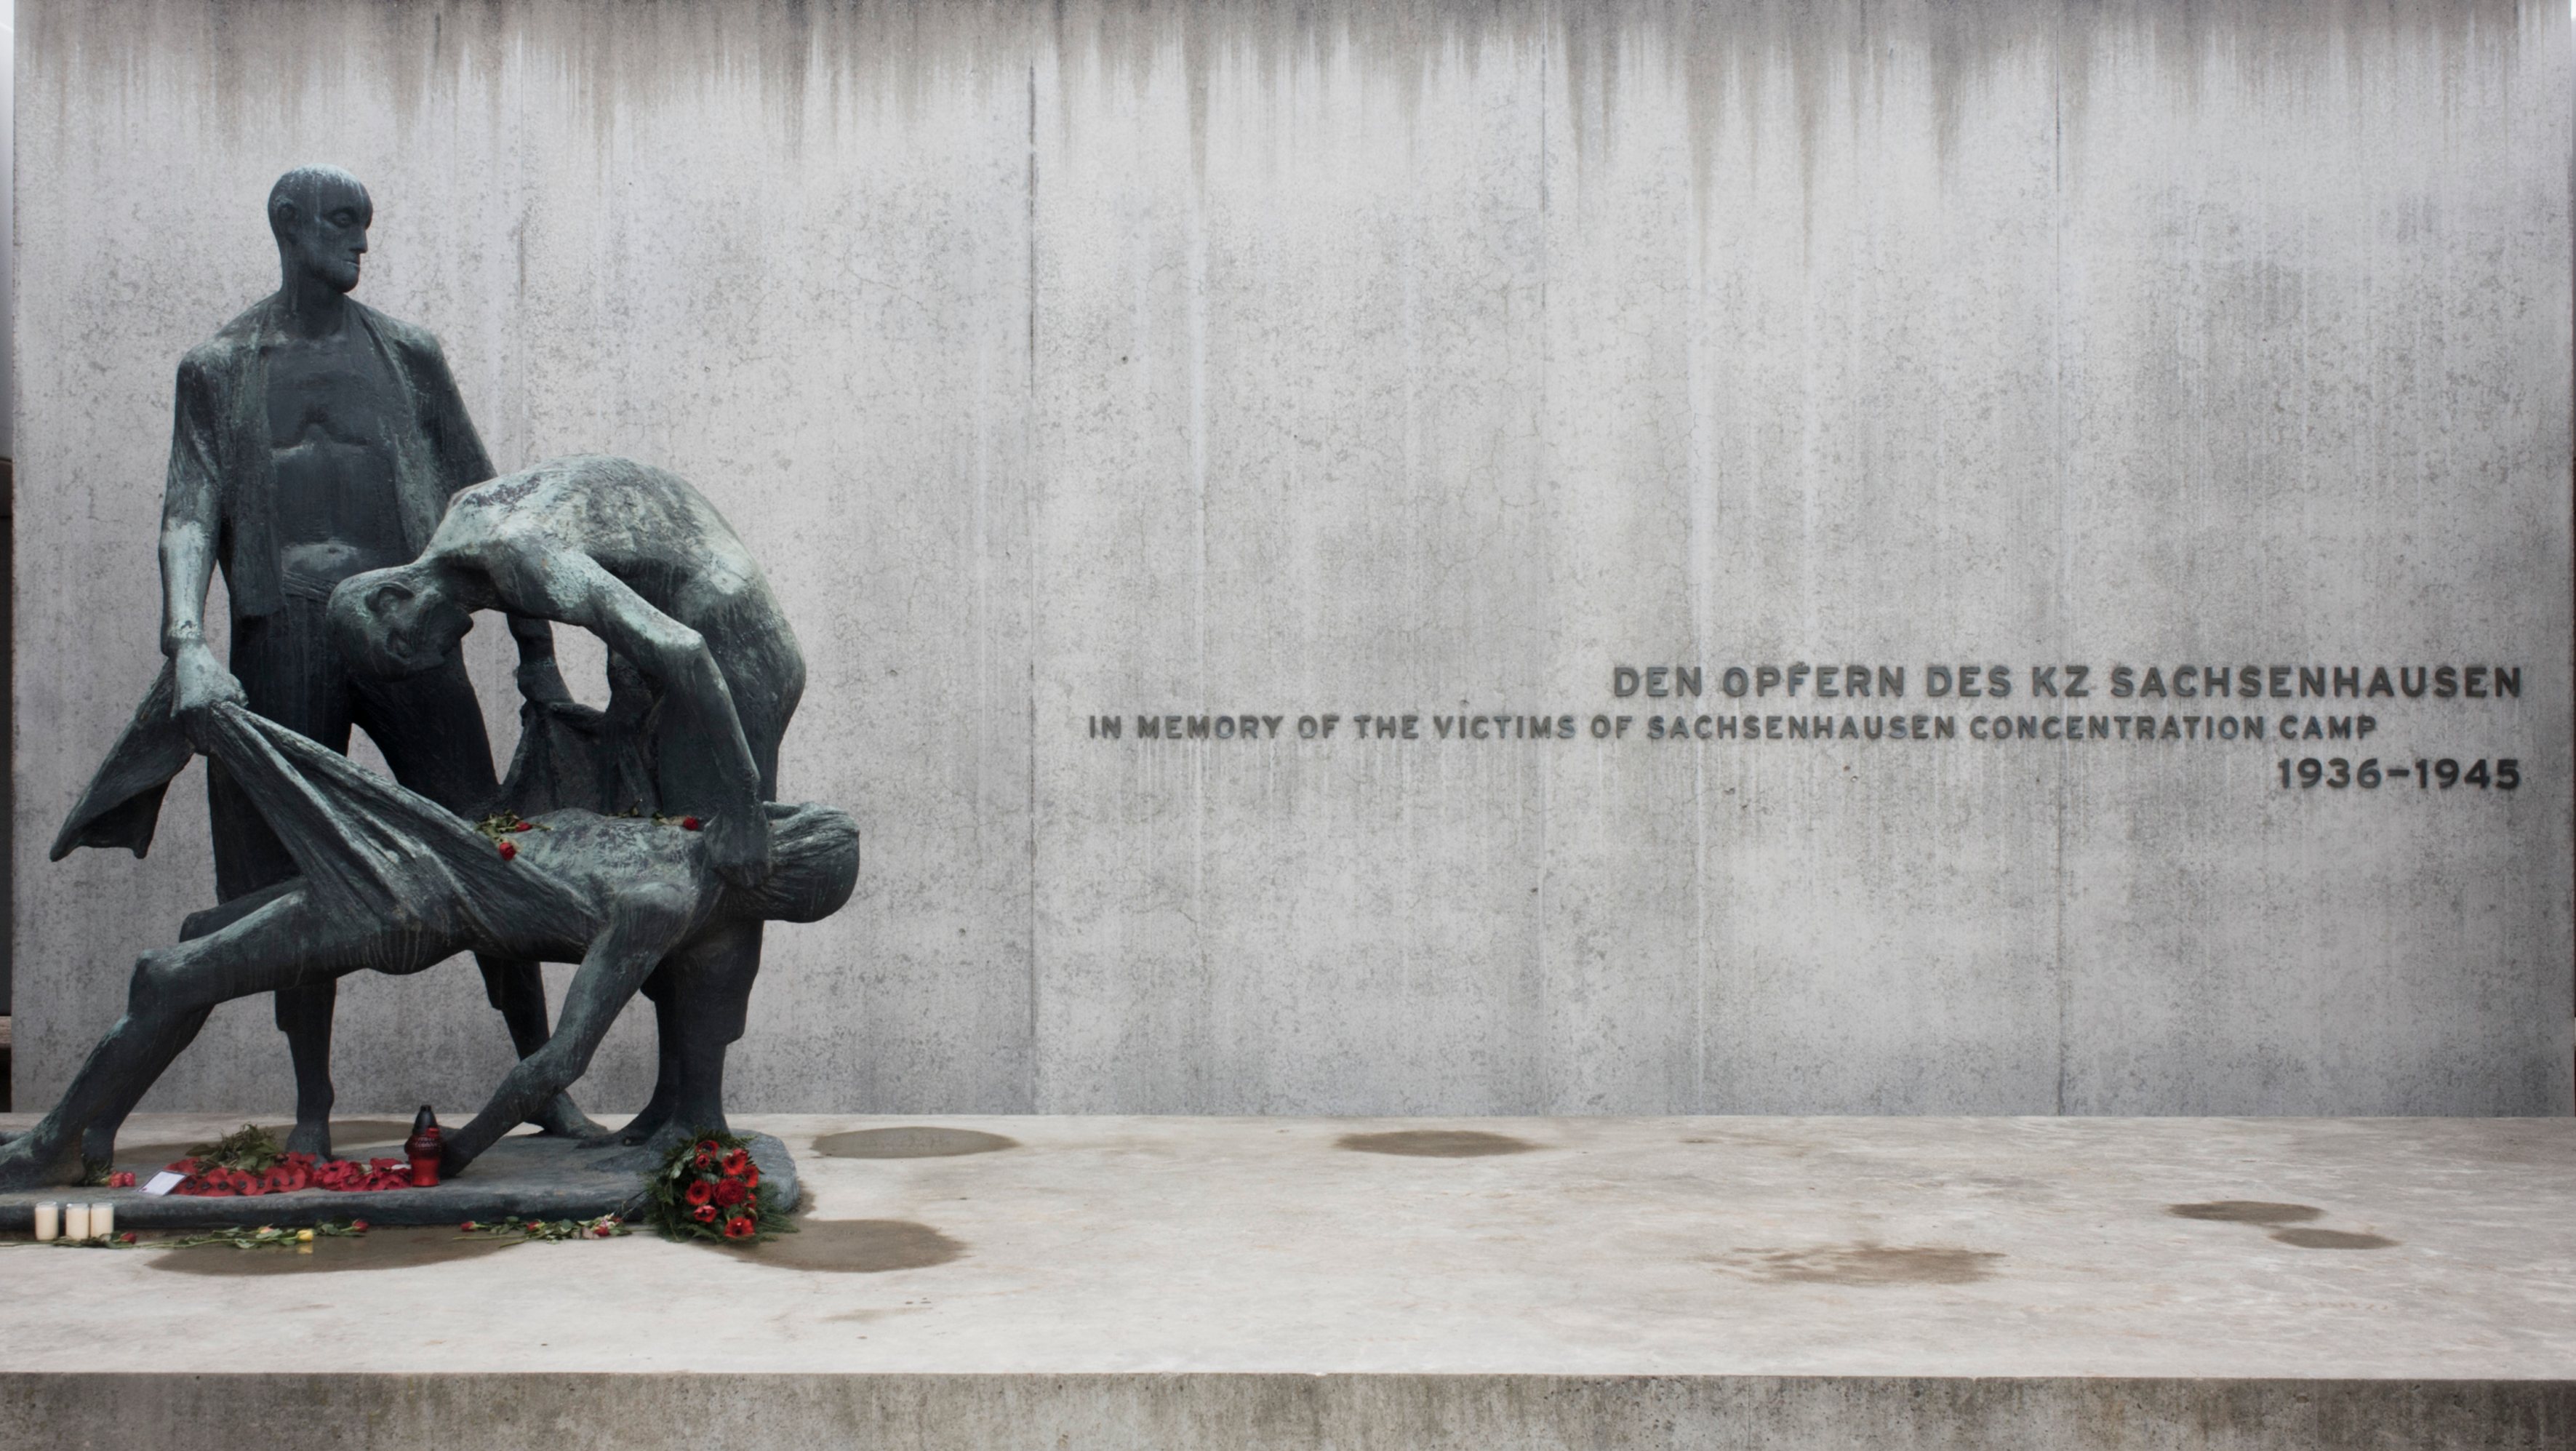 Germany - Oranienburg - Sachsenhausen Crematorium Memorial